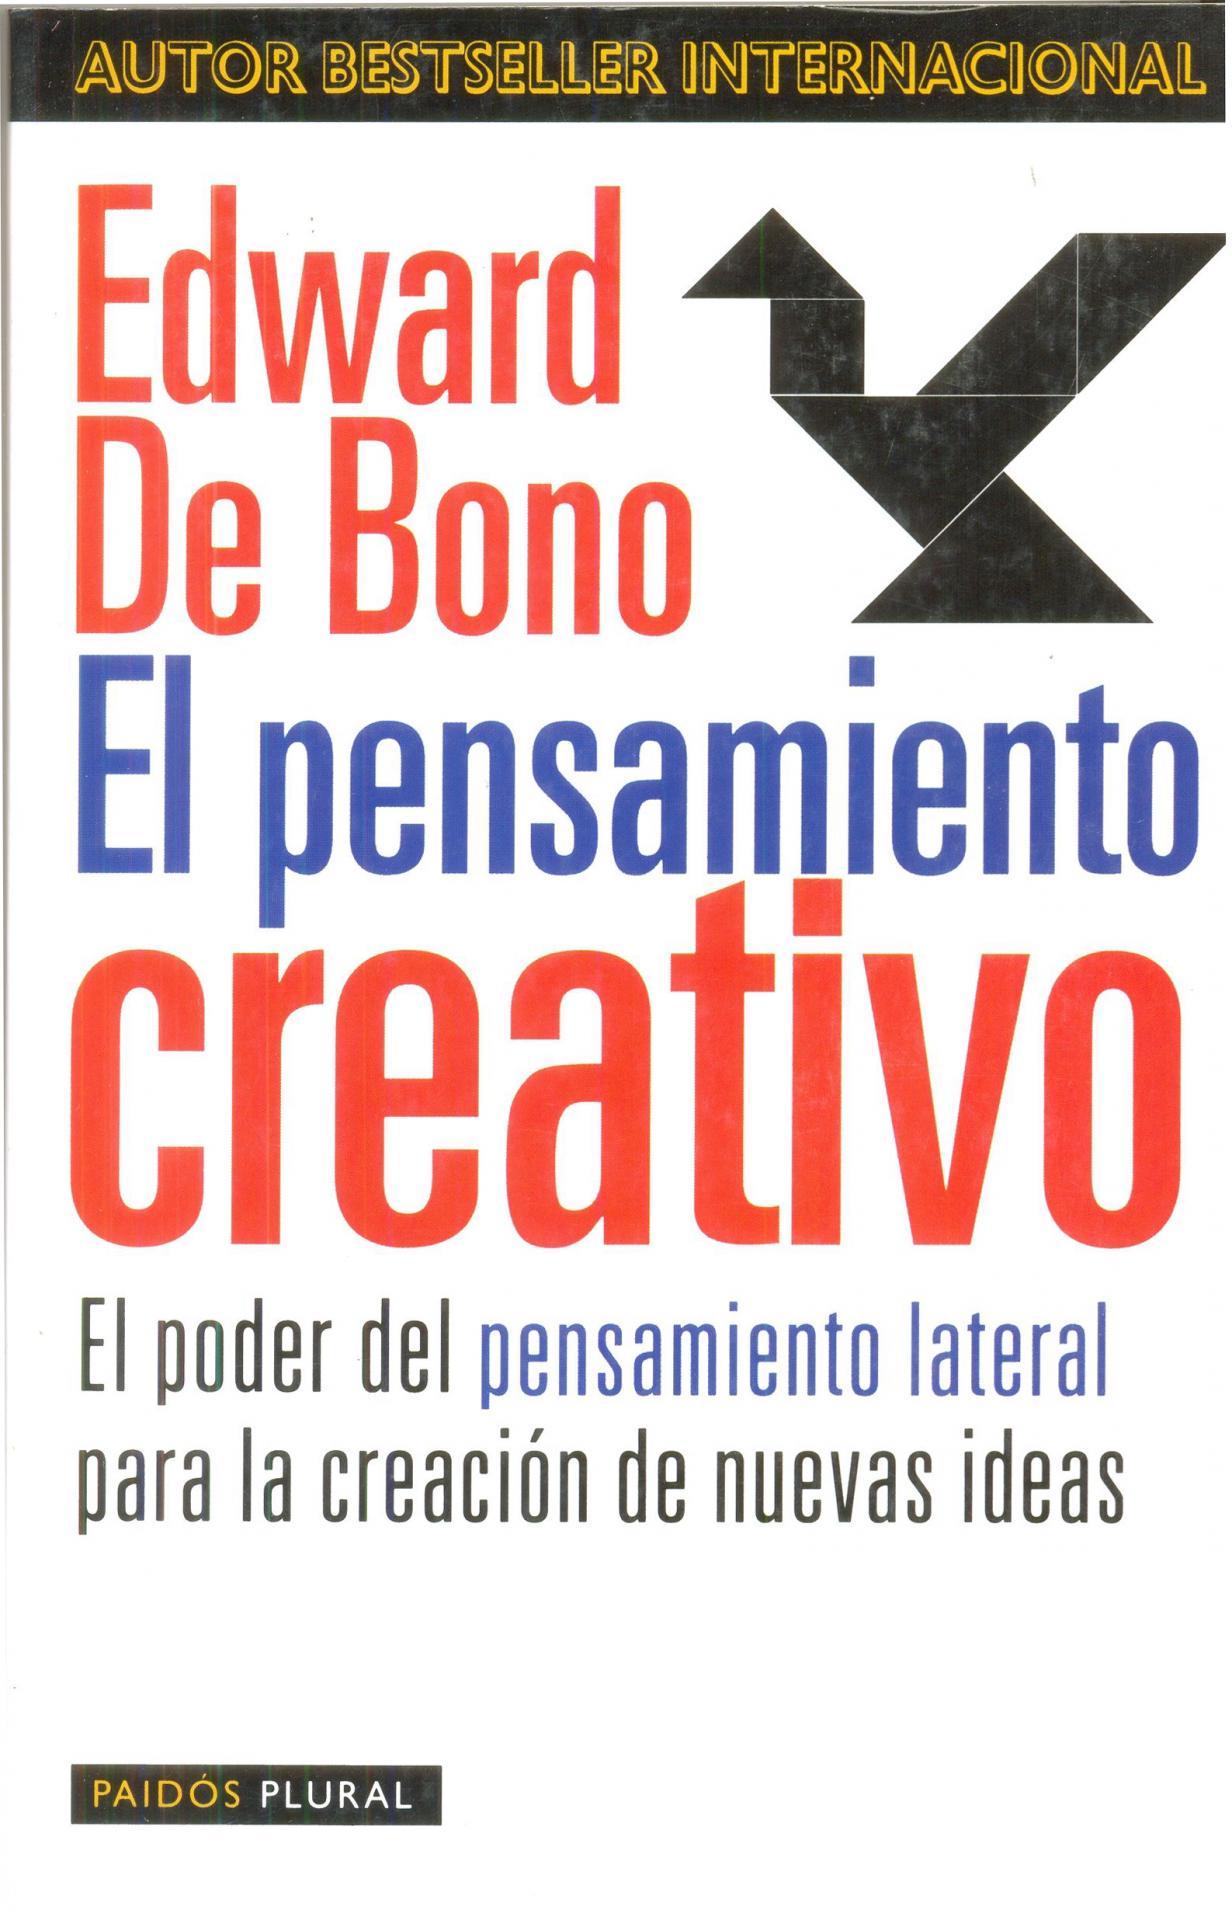 EL PENSAMIENTO CREATIVO. El poder del pensamiento lateral para la creación de nuevas ideas.  De Bono, E. 